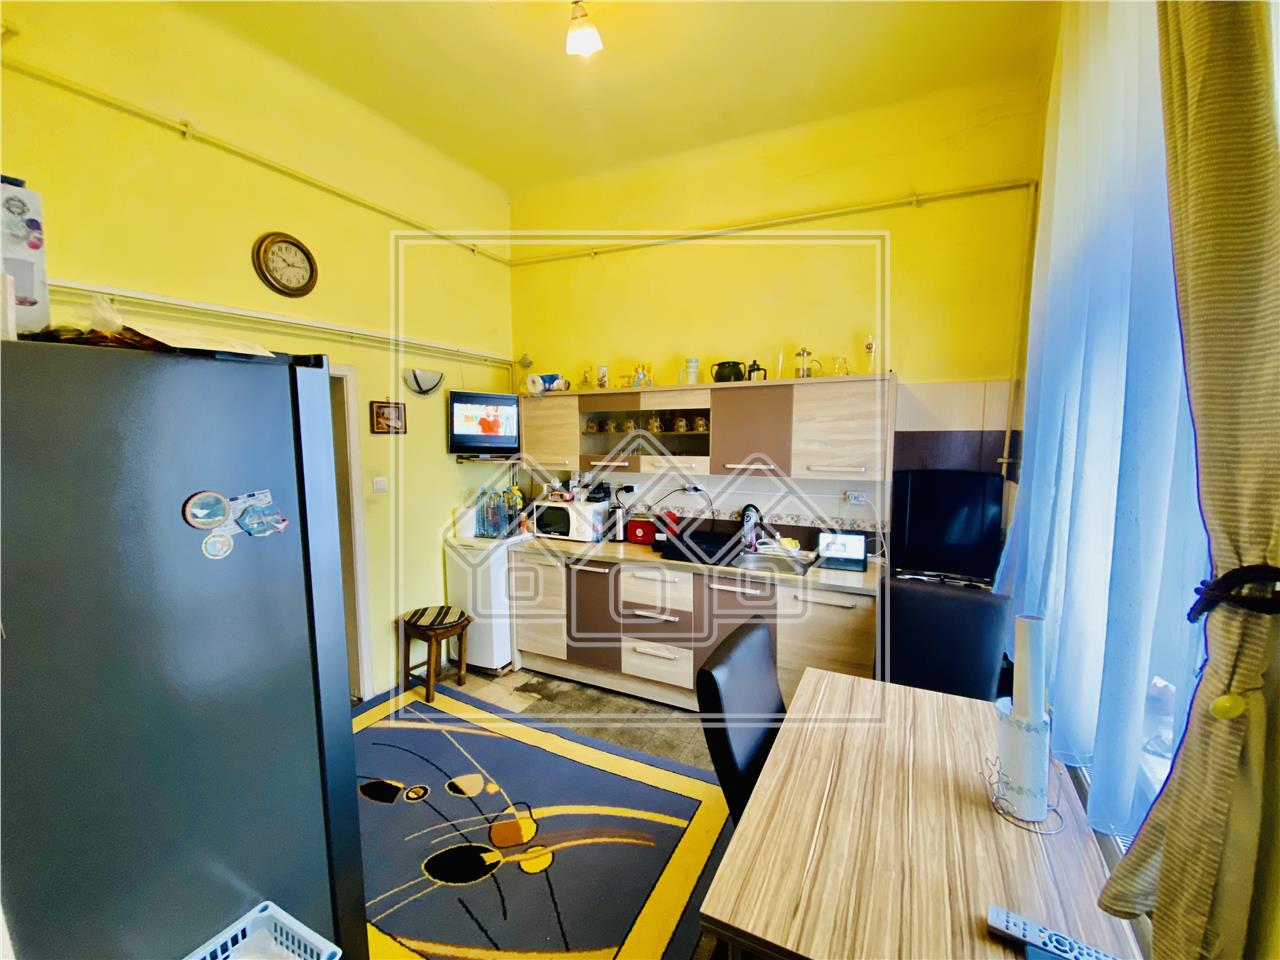 Wohnung zu verkaufen in Sibiu - zu Hause - 4 Zimmer, Garage und Keller